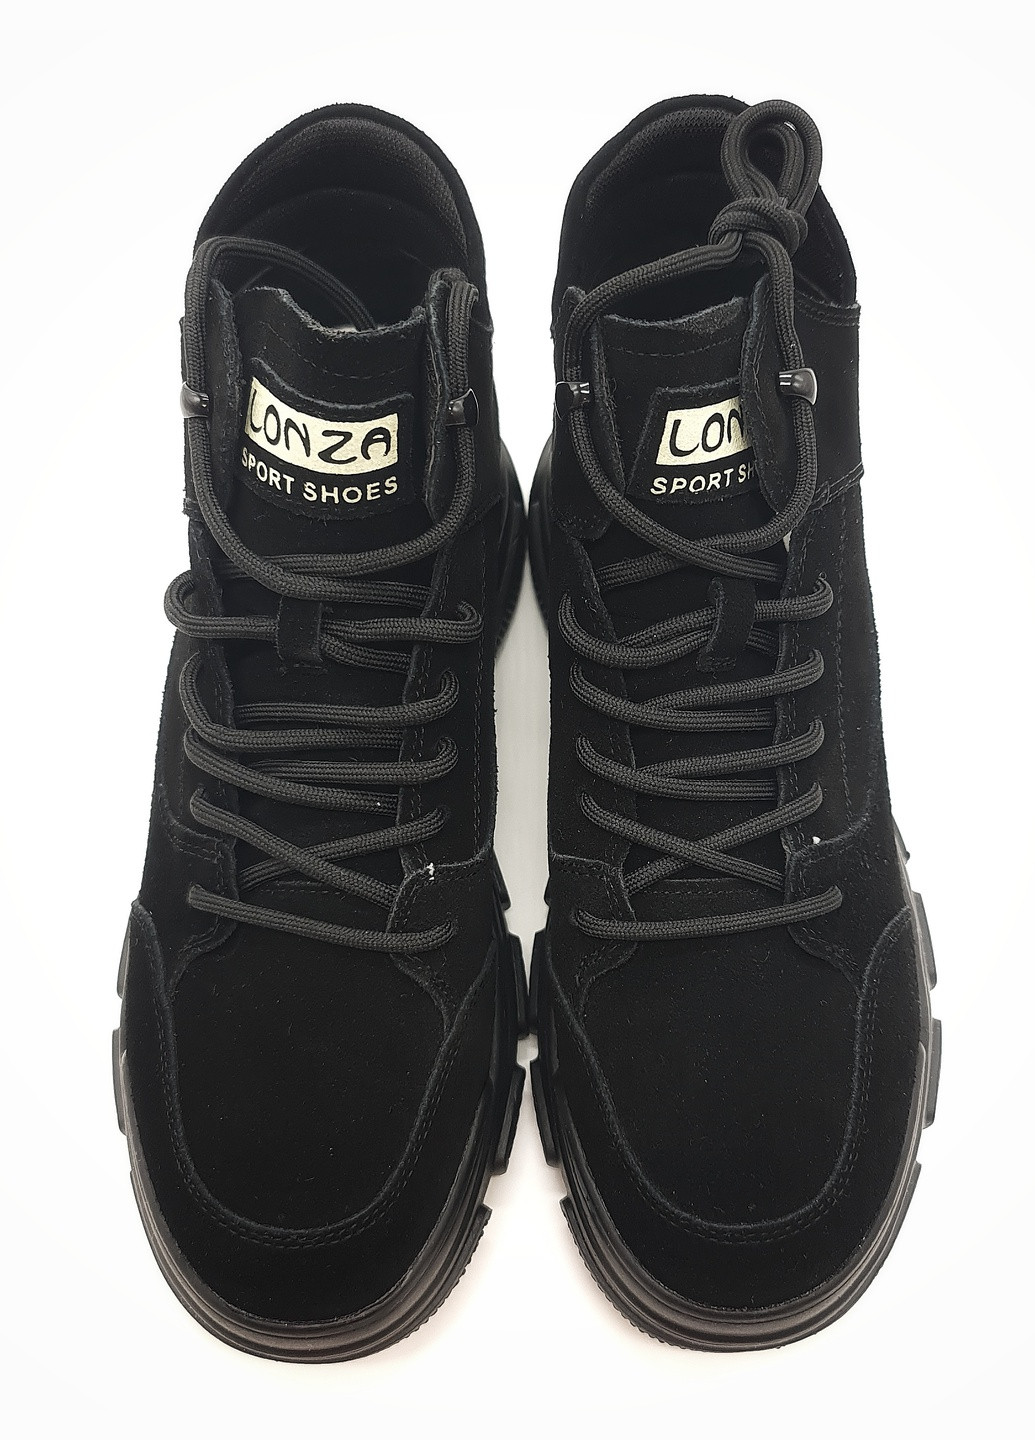 Осенние женские ботинки черные замшевые l-18-14 23 см (р) Lonza